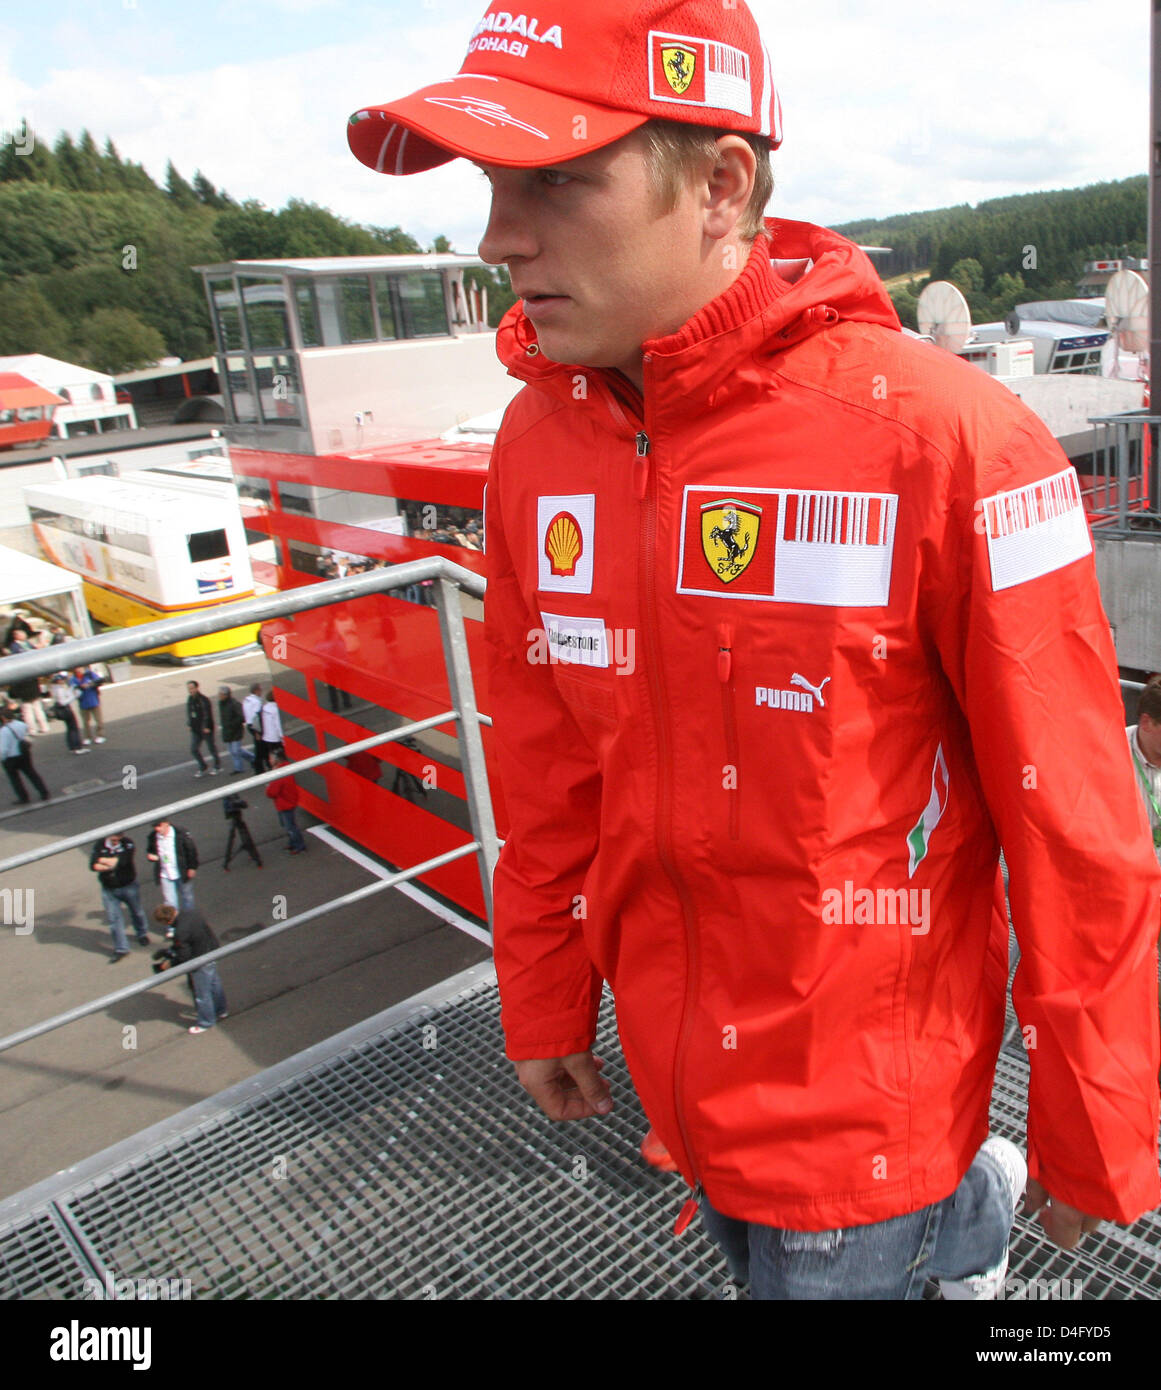 Finnish Formula One driver Kimi Raikkonen of Scuderia Ferrari arrives at  the track of Spa-Francorchamps,